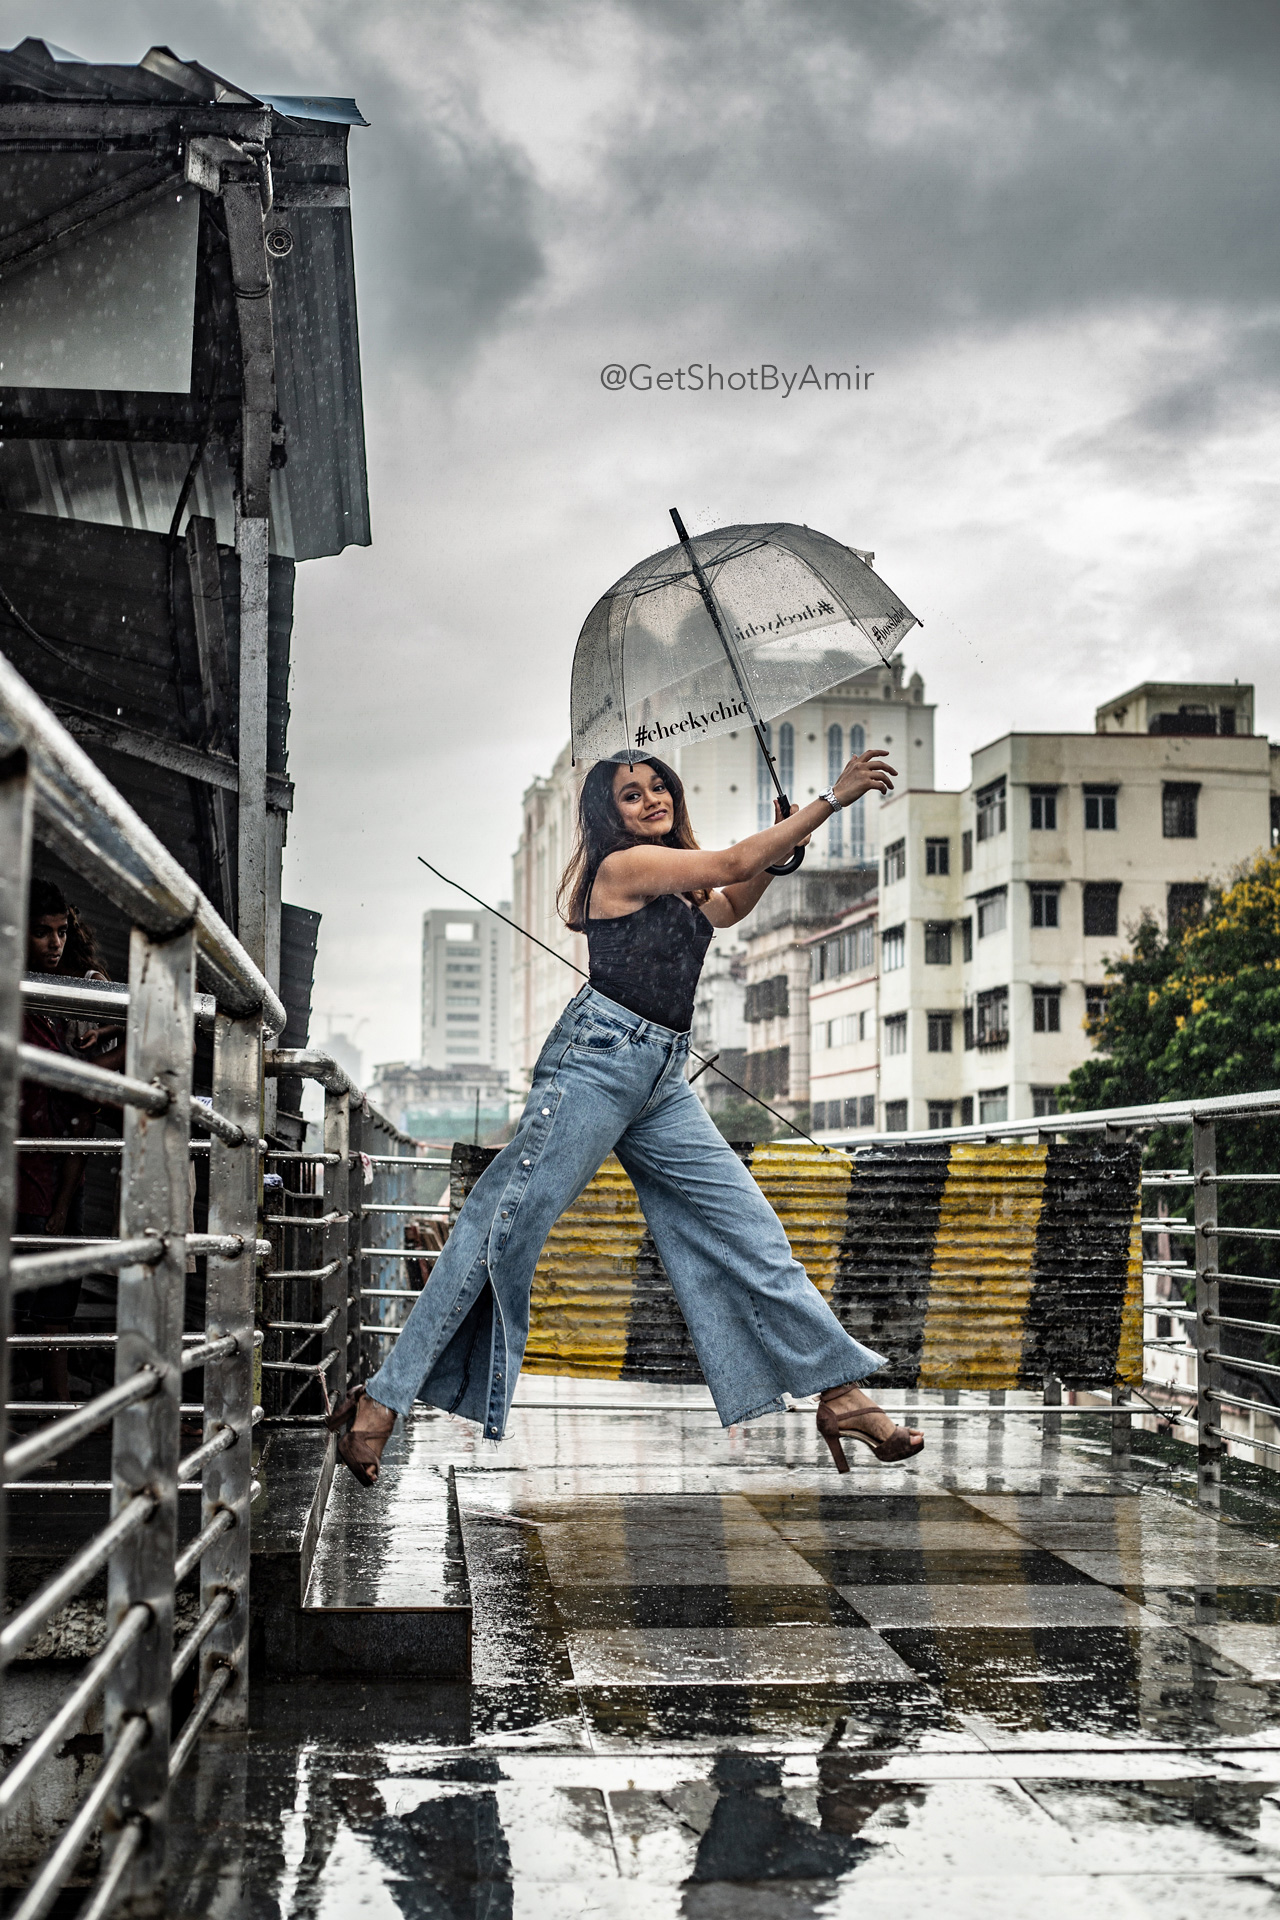 Creative rain photography in Mumbai